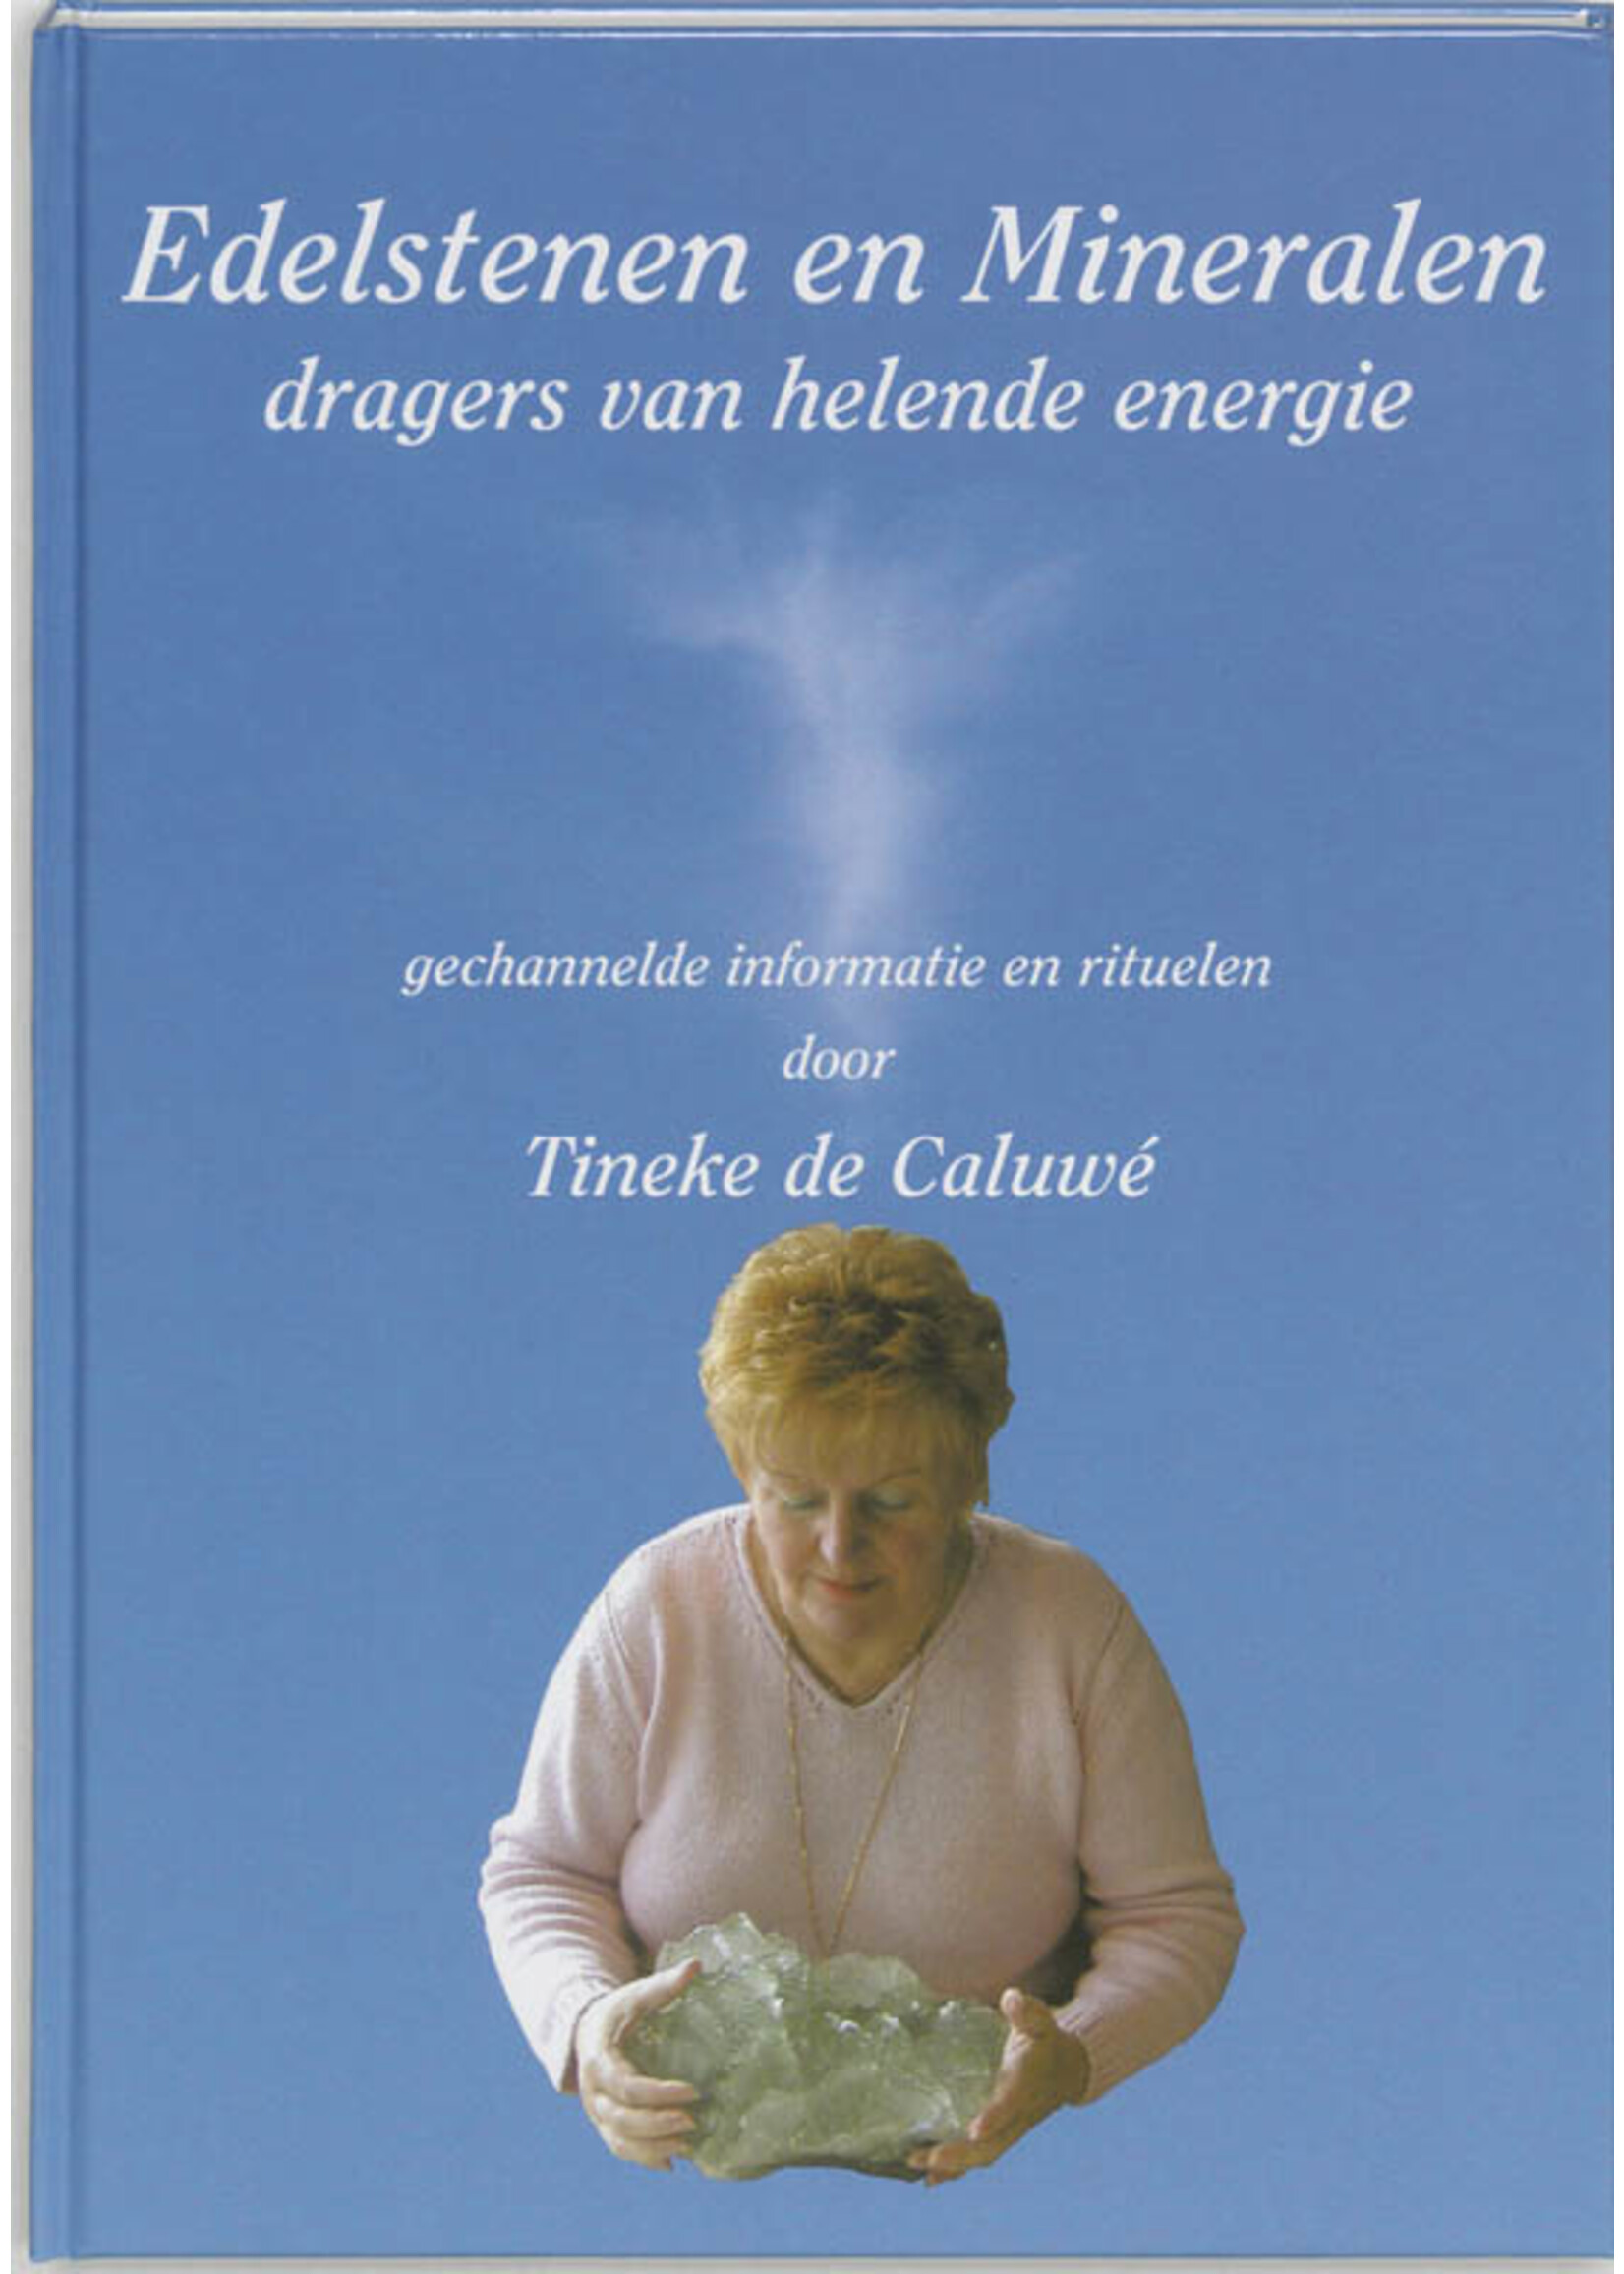 Boek EDELSTENEN EN MINERALEN, dragers van helende energie, T. de Caluwe, Flevodruk Harlingen, 9789070886691